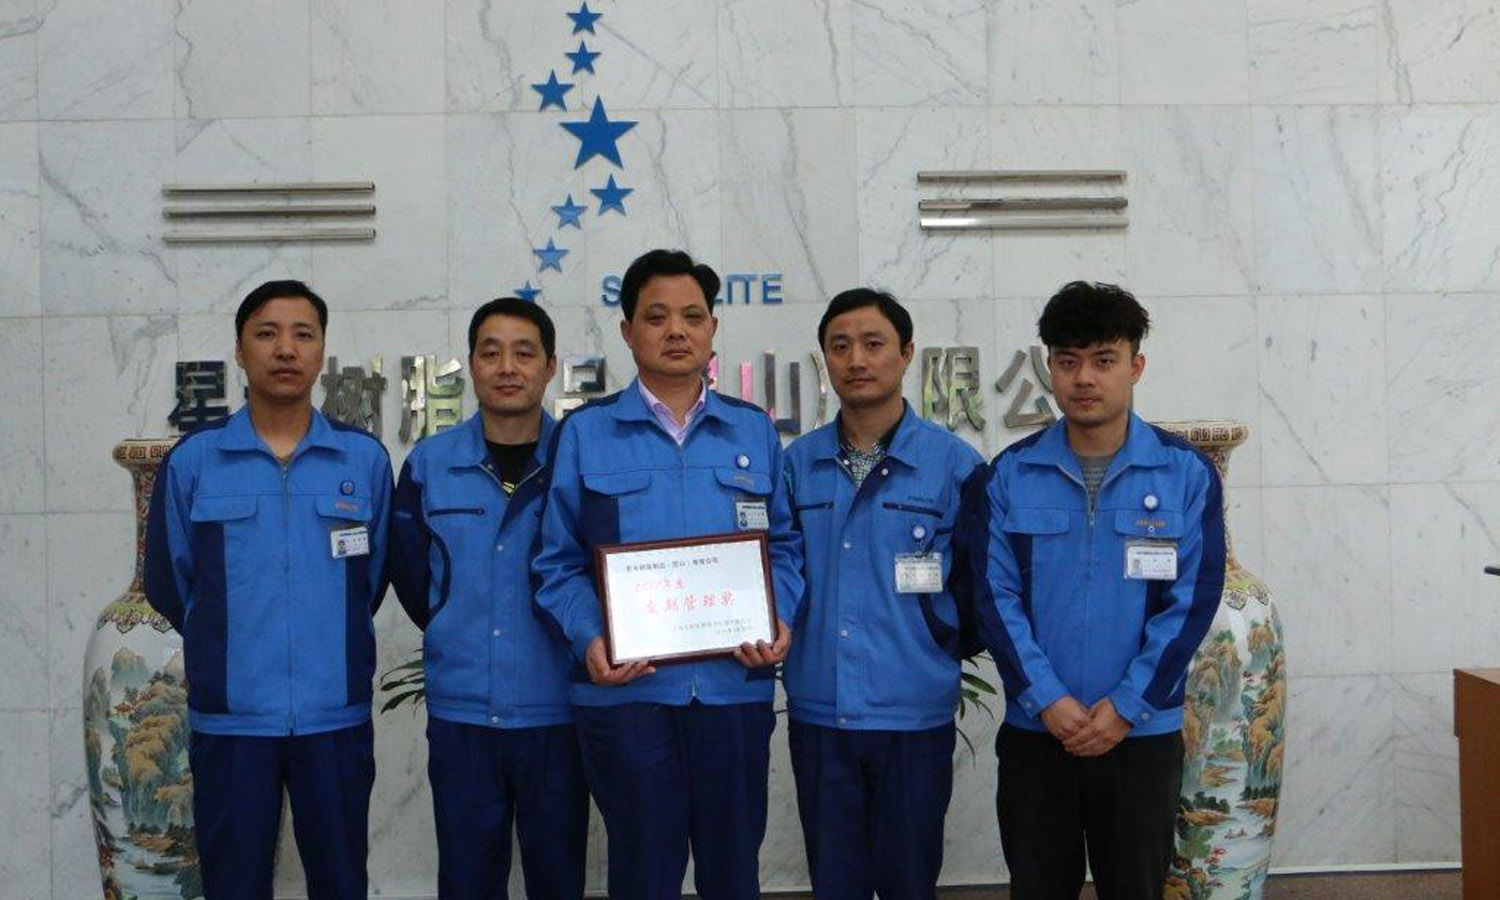 榮獲上海光電醫用電子儀器有限公司【交期管理獎】表彰